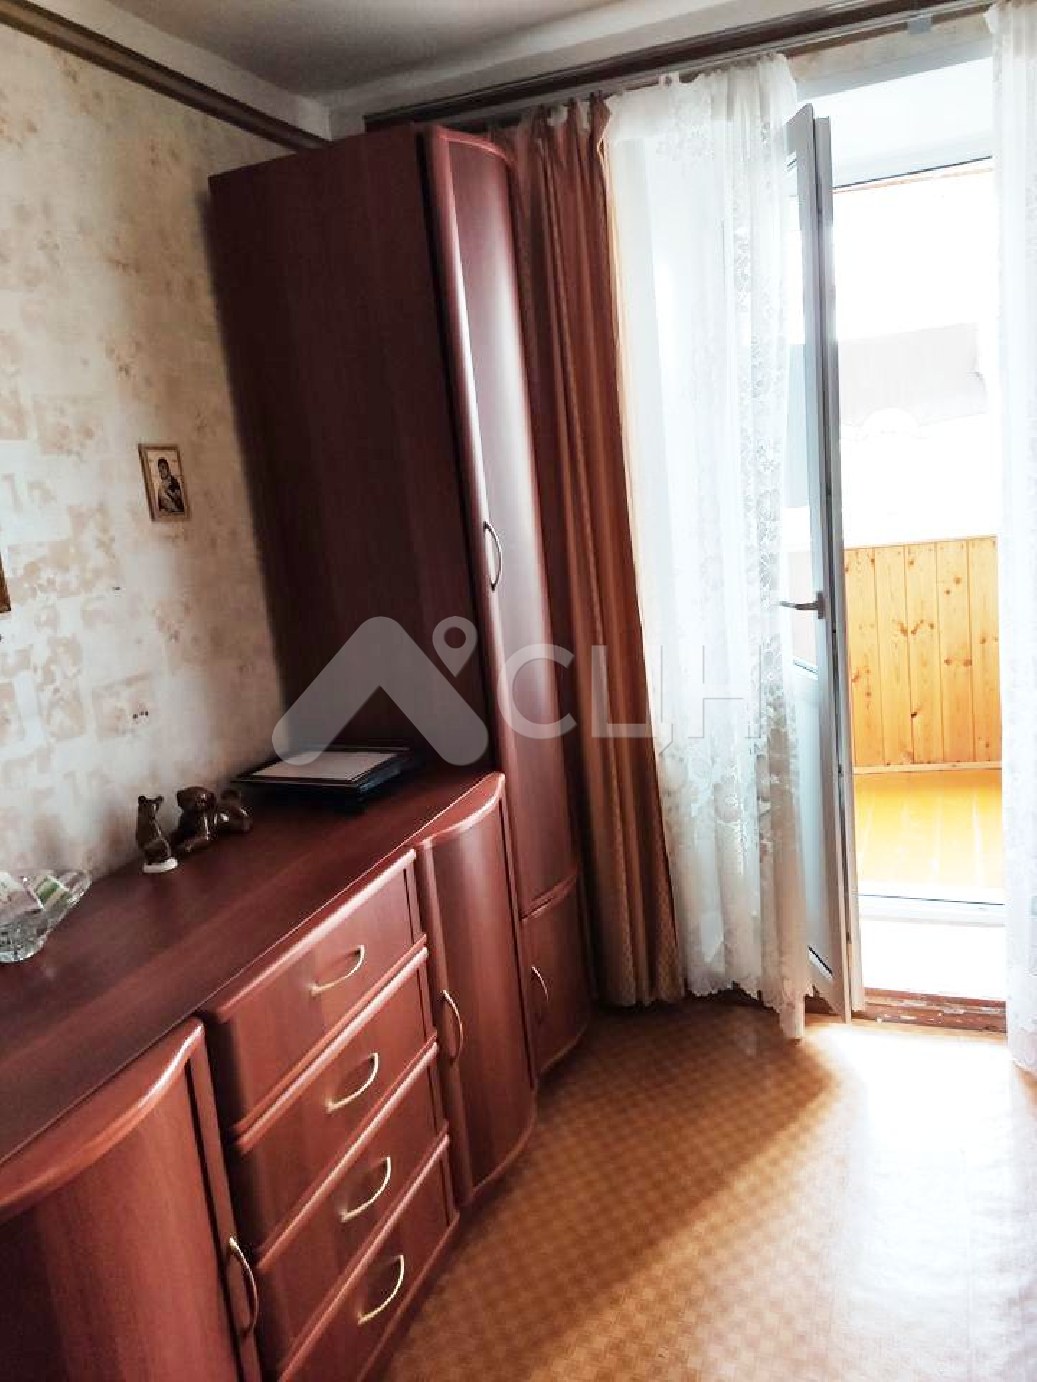 колсар недвижимость
: Г. Саров, улица Некрасова, 11, 3-комн квартира, этаж 2 из 9, продажа.